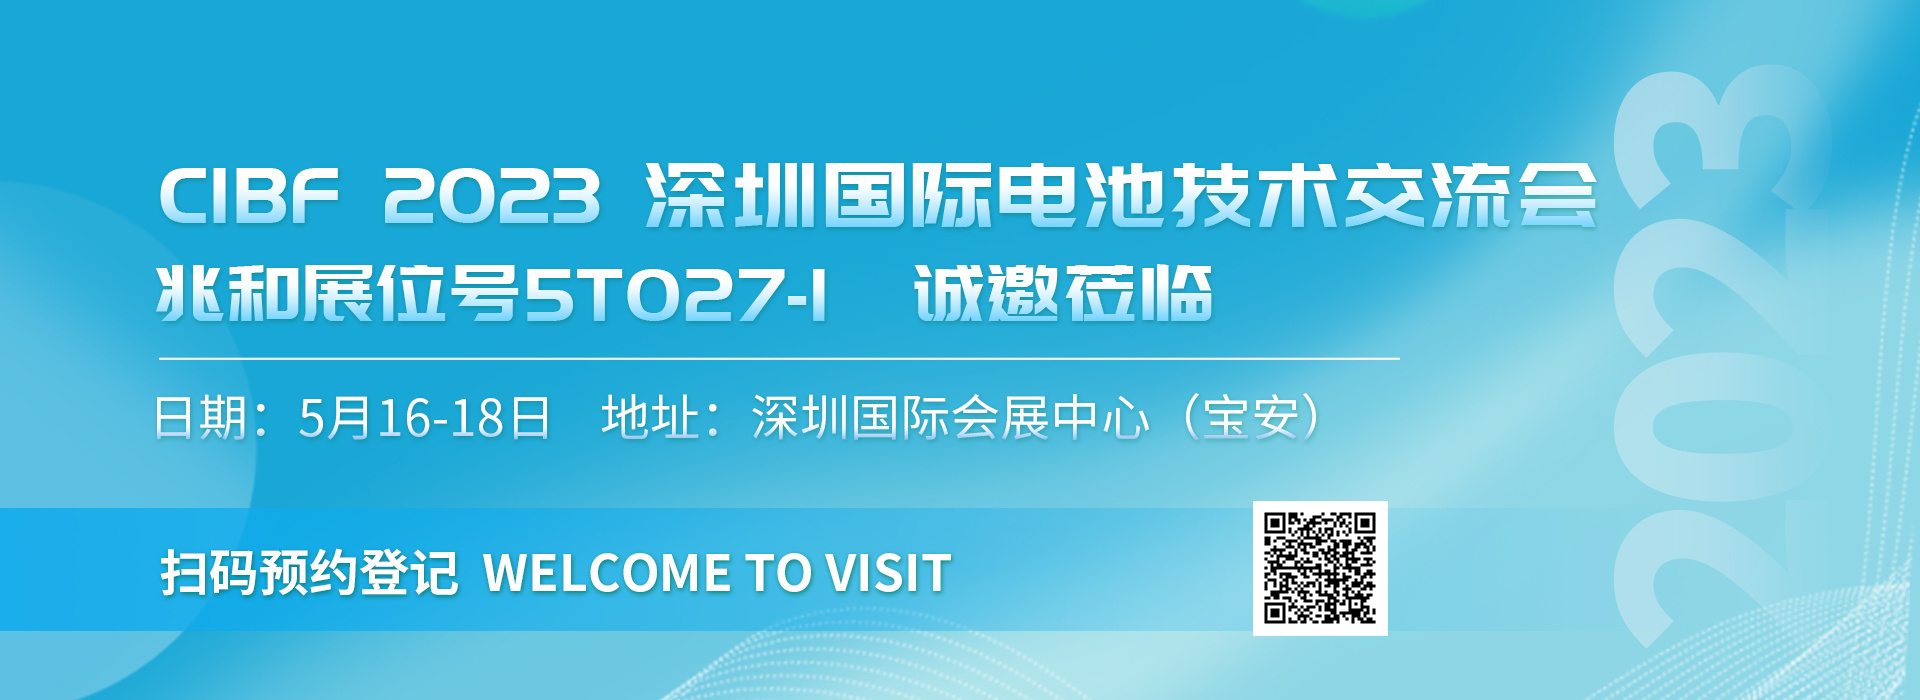 CIBF2023 深圳國際電池技術交流會 兆和展位報名登記